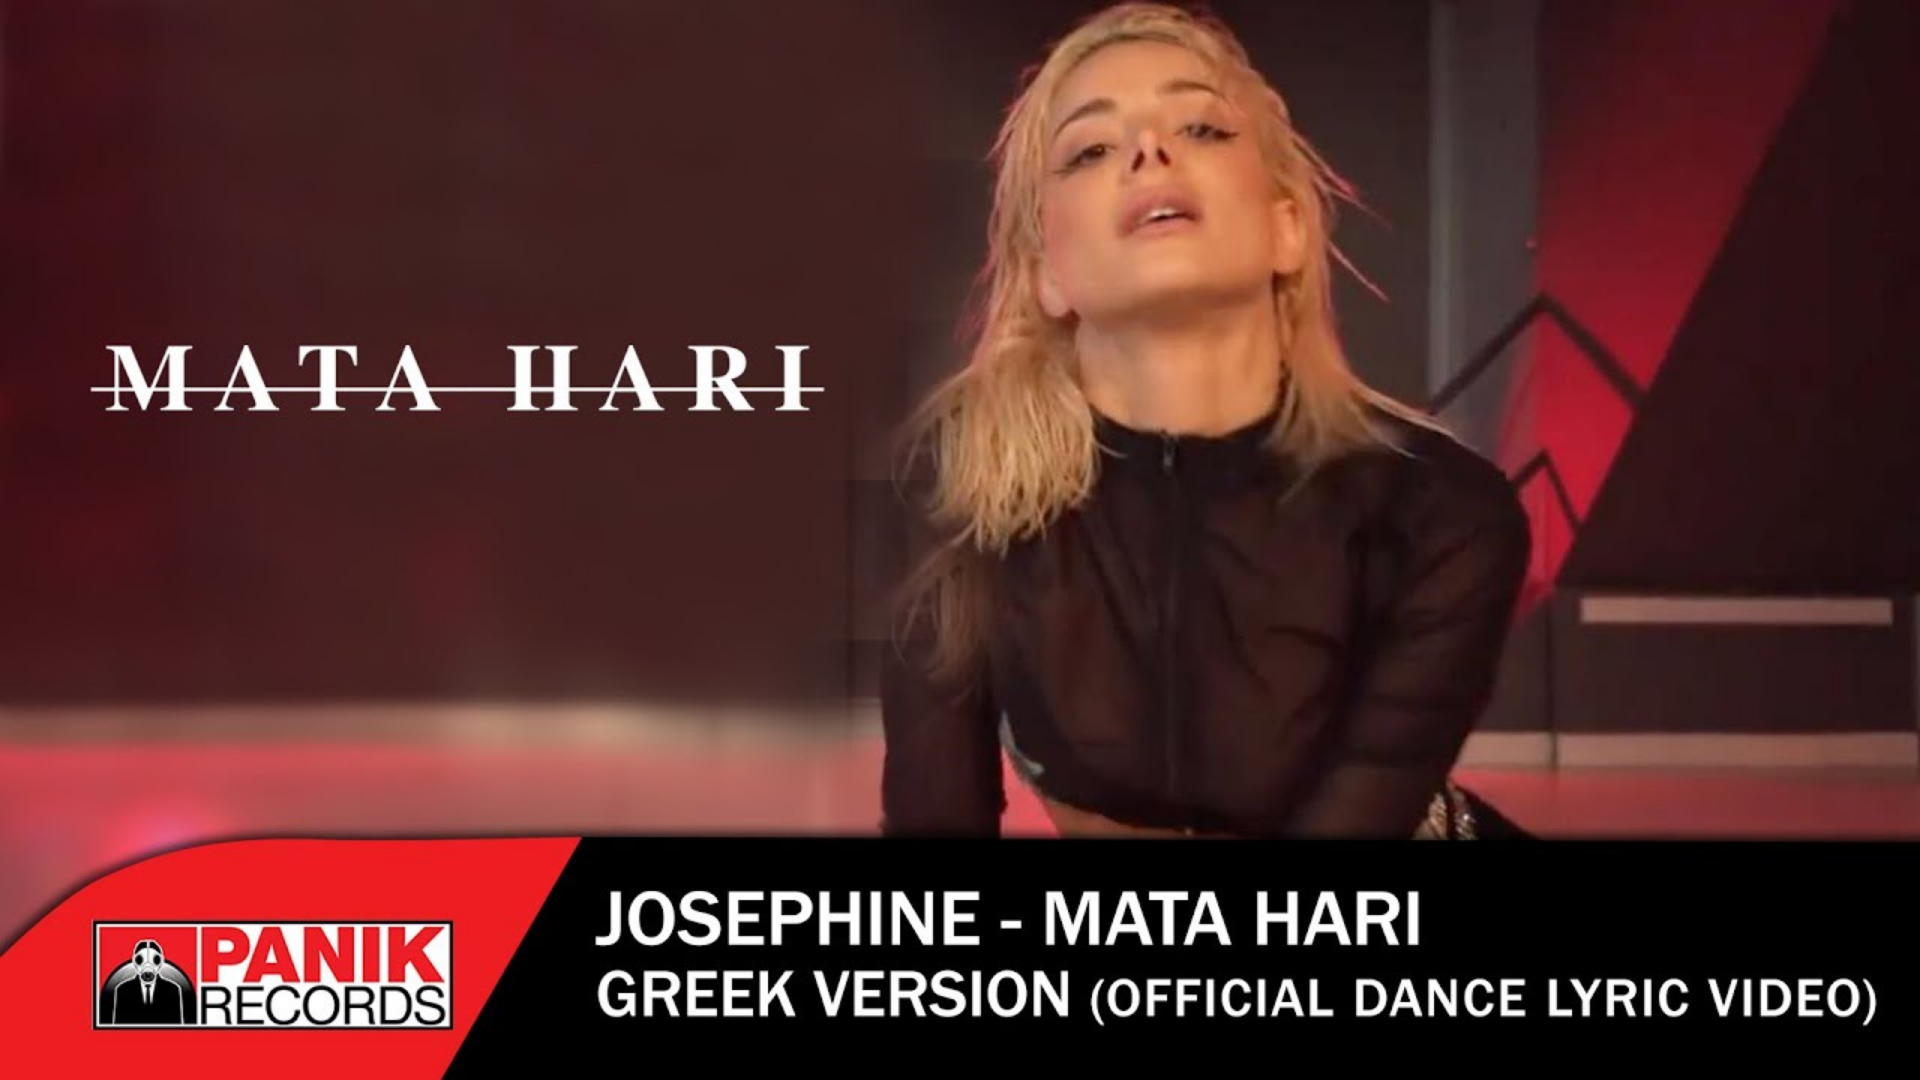 La artista Josephine presenta una versión griega de “Mata Hari”, el tema azerí para Róterdam 2021